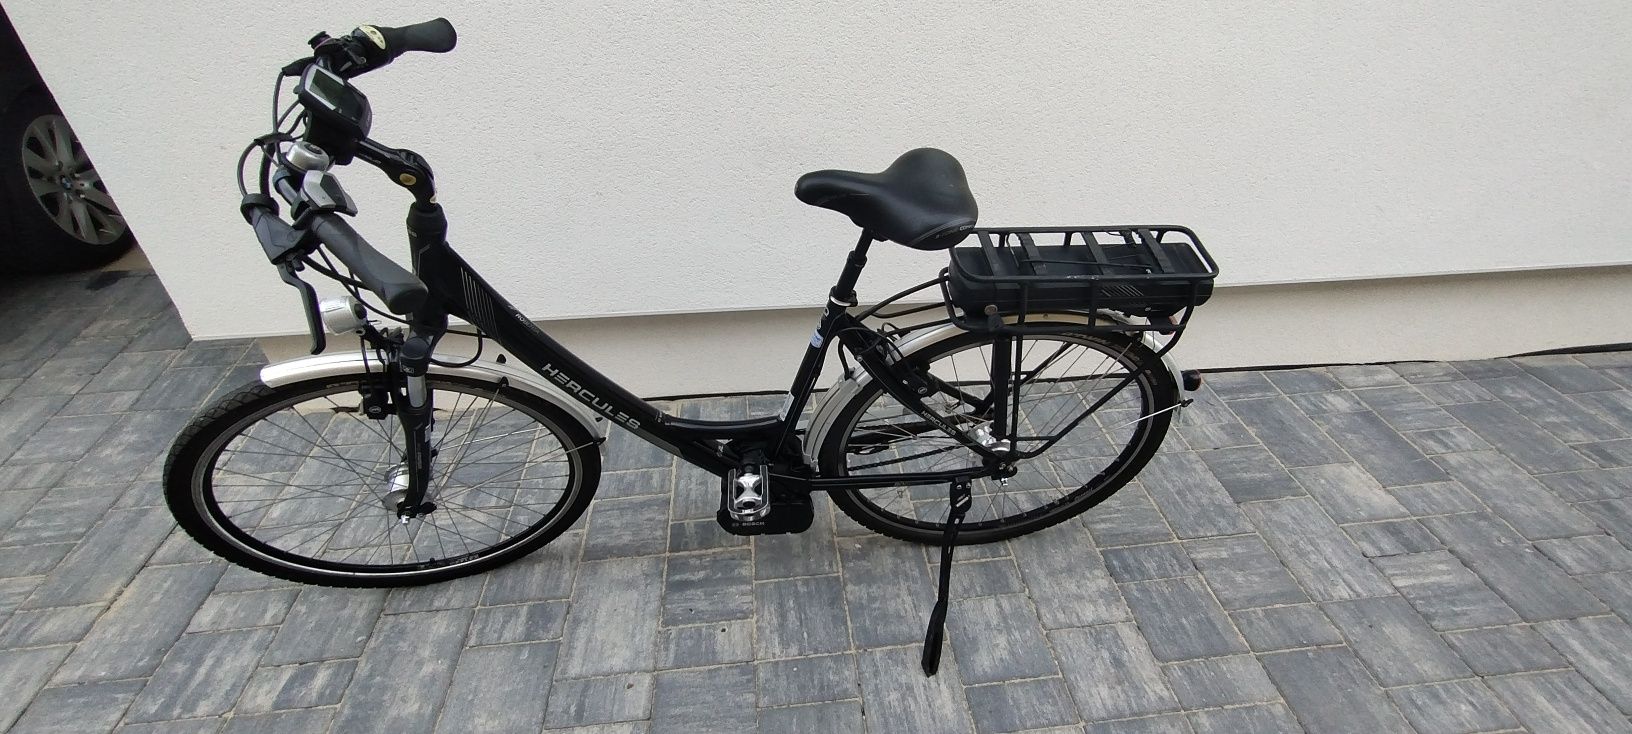 Bicicleta electrica Hercules